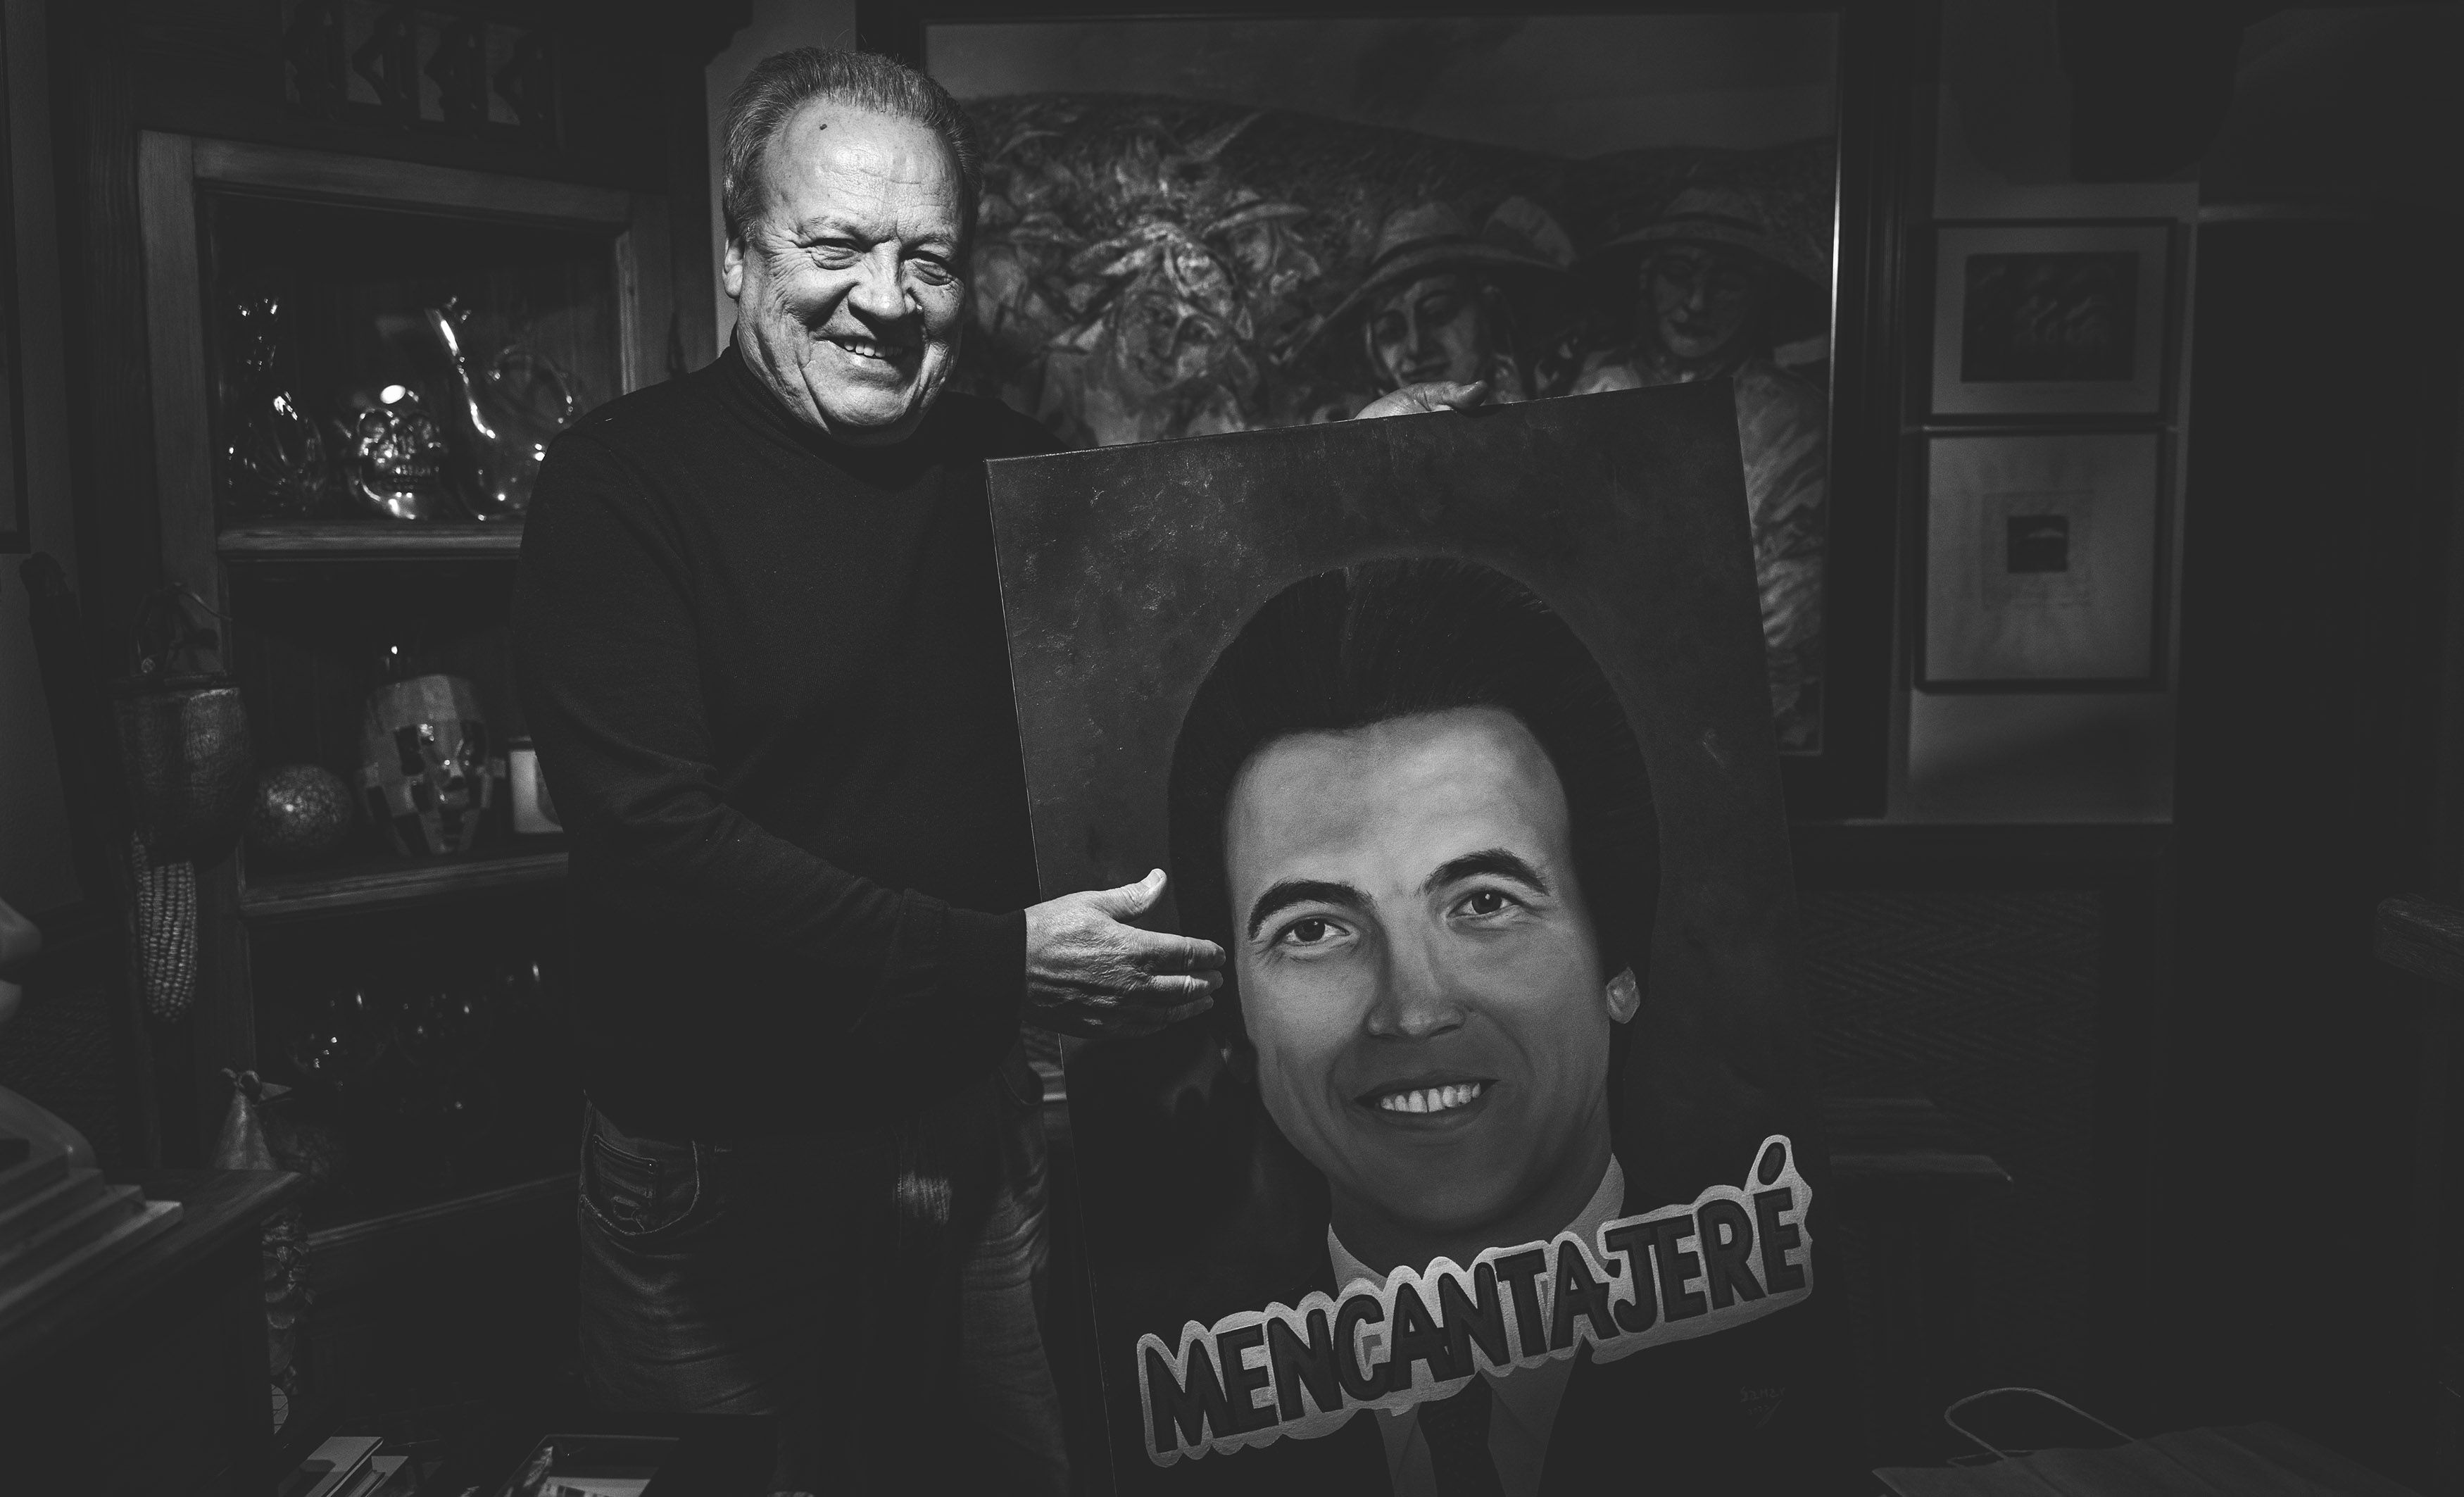 Pedro Pacheco, retratado en su casa este pasado martes, con un retrato suyo y su famoso lema 'Mencanta Jeré'.